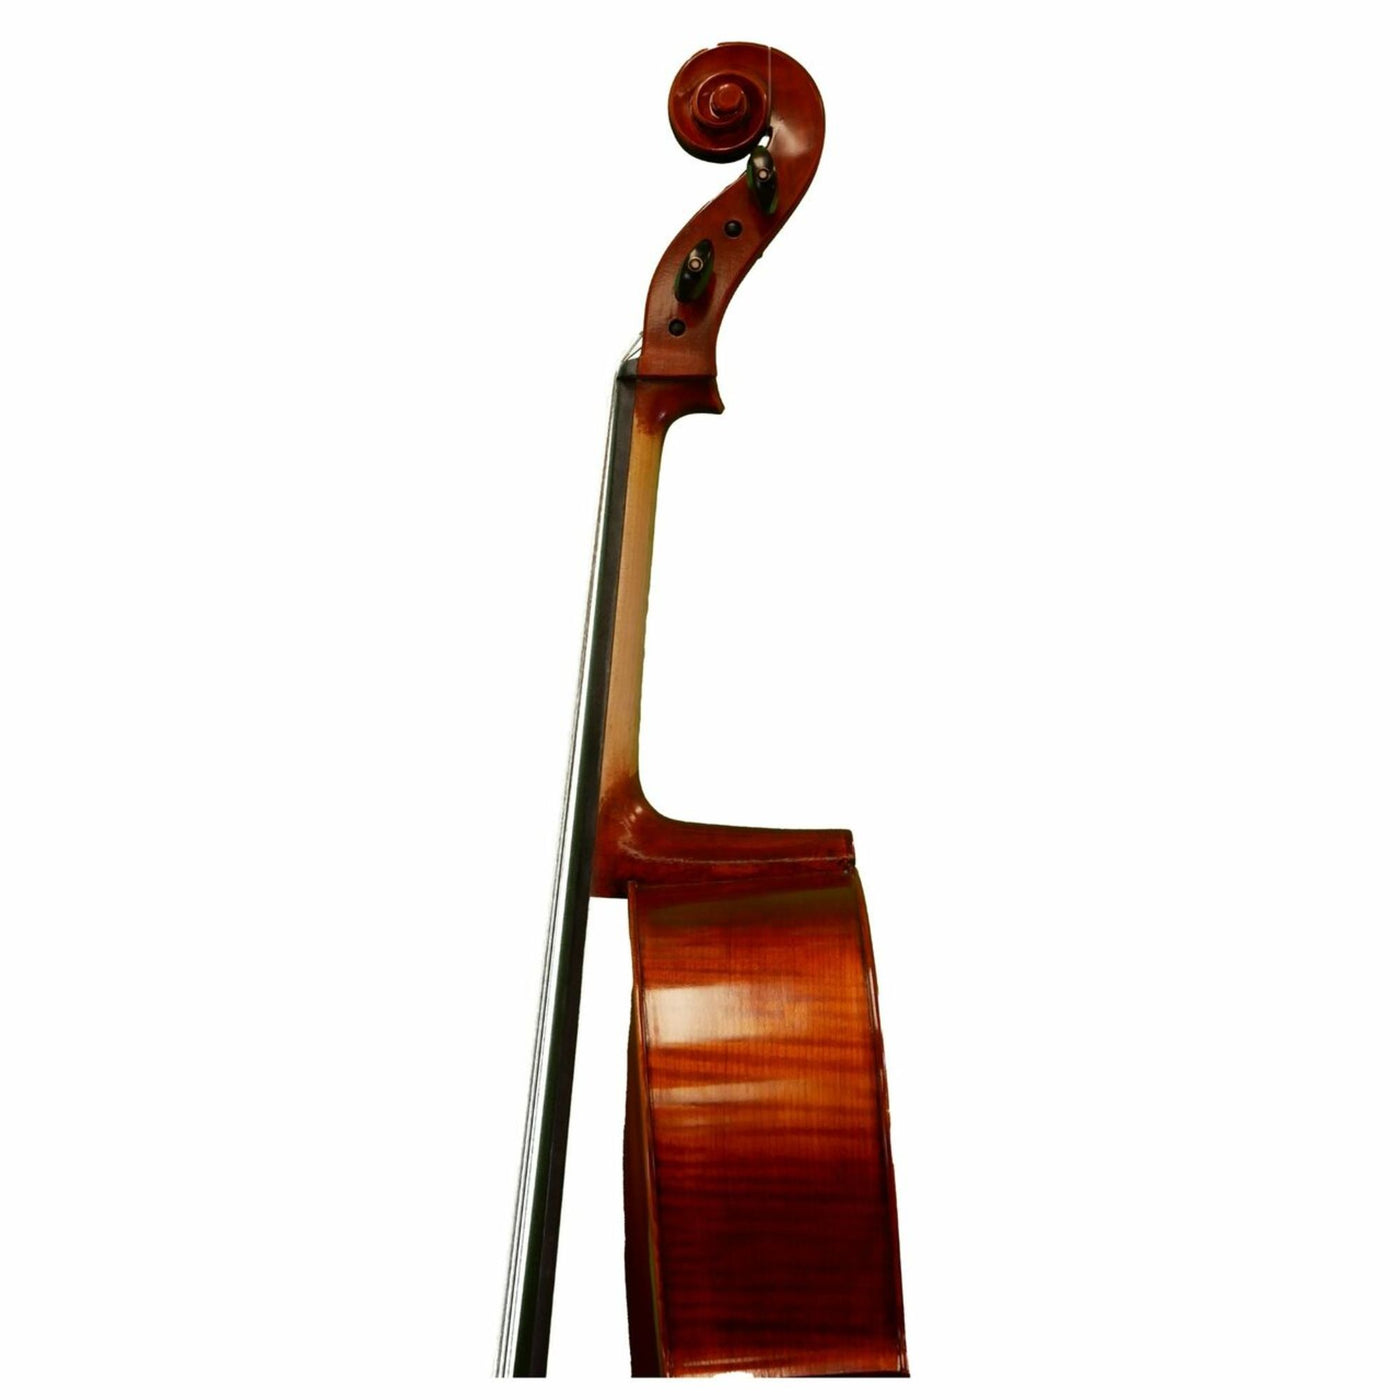 Mathias Thoma Model 68 4/4 Size Cello Outfit